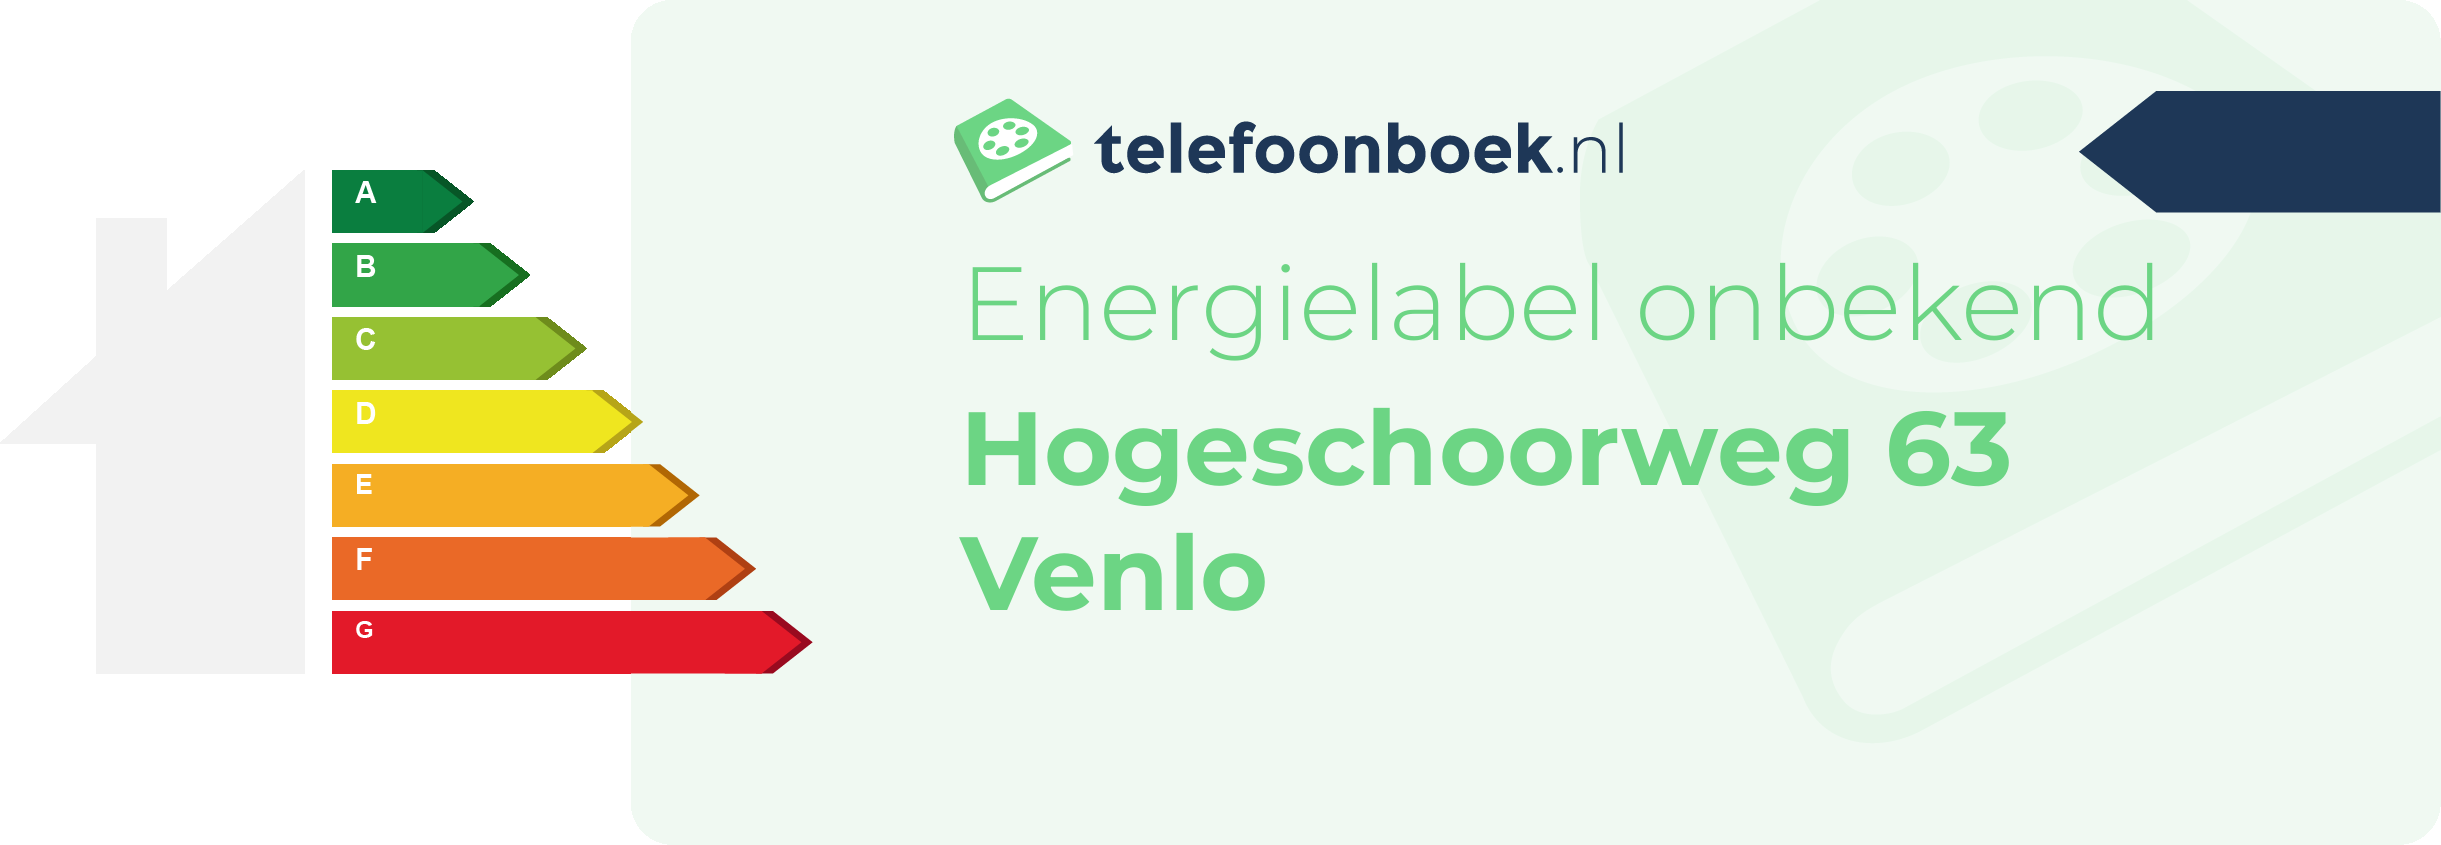 Energielabel Hogeschoorweg 63 Venlo